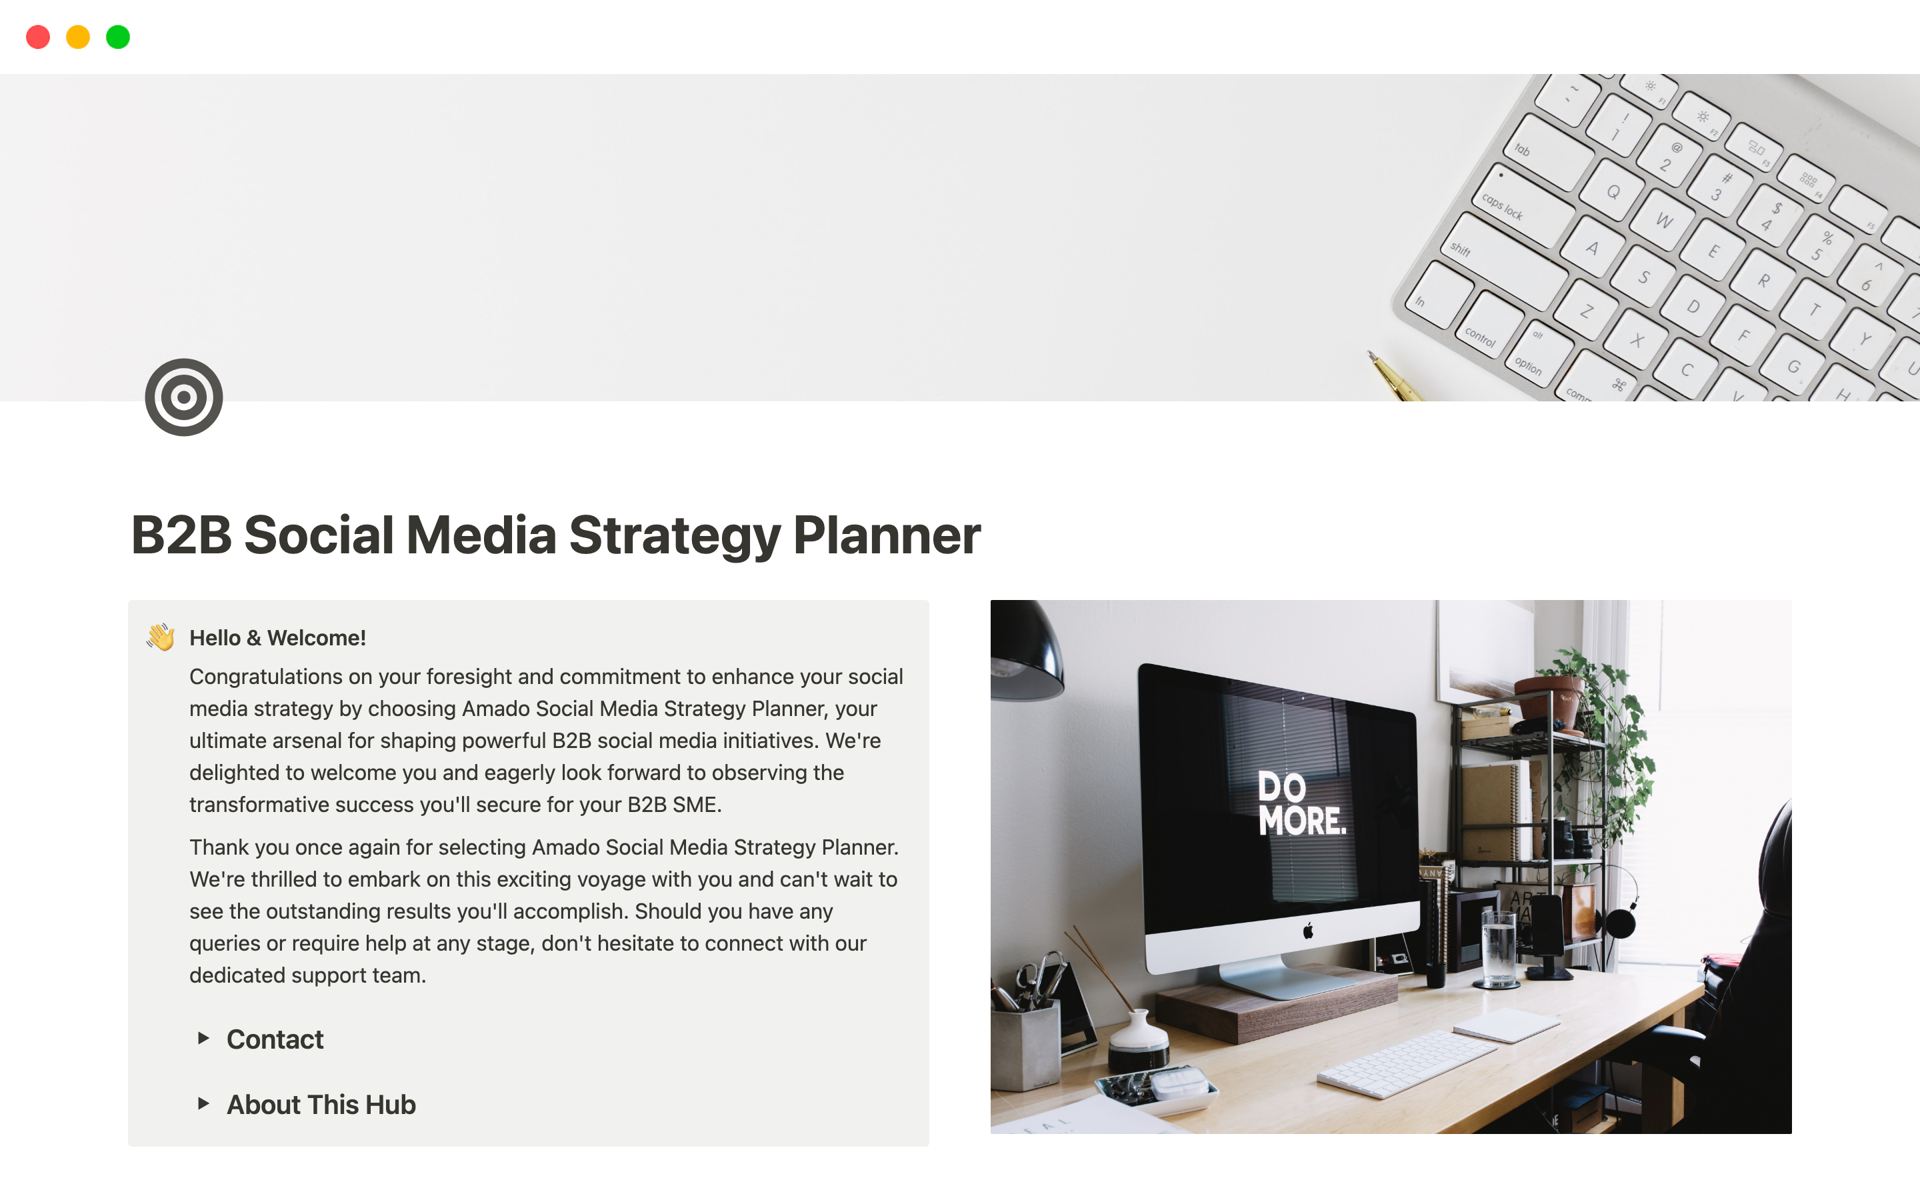 Vista previa de una plantilla para B2B Social Media Strategy Planner